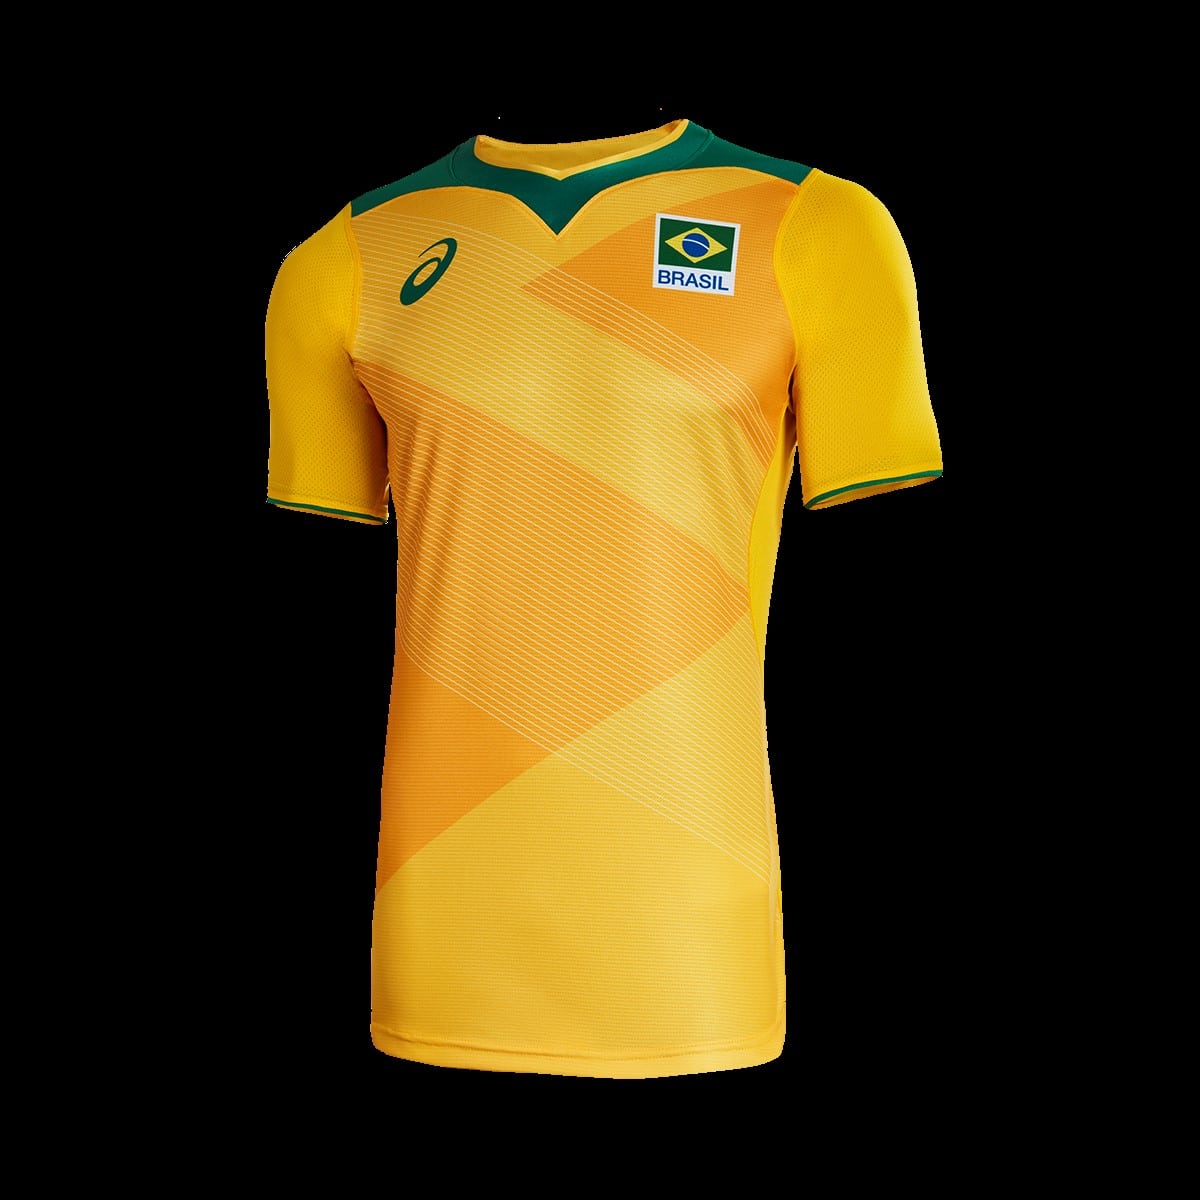 uniforme da seleção brasileira de vôlei para os jogos olímpicos de tóquio